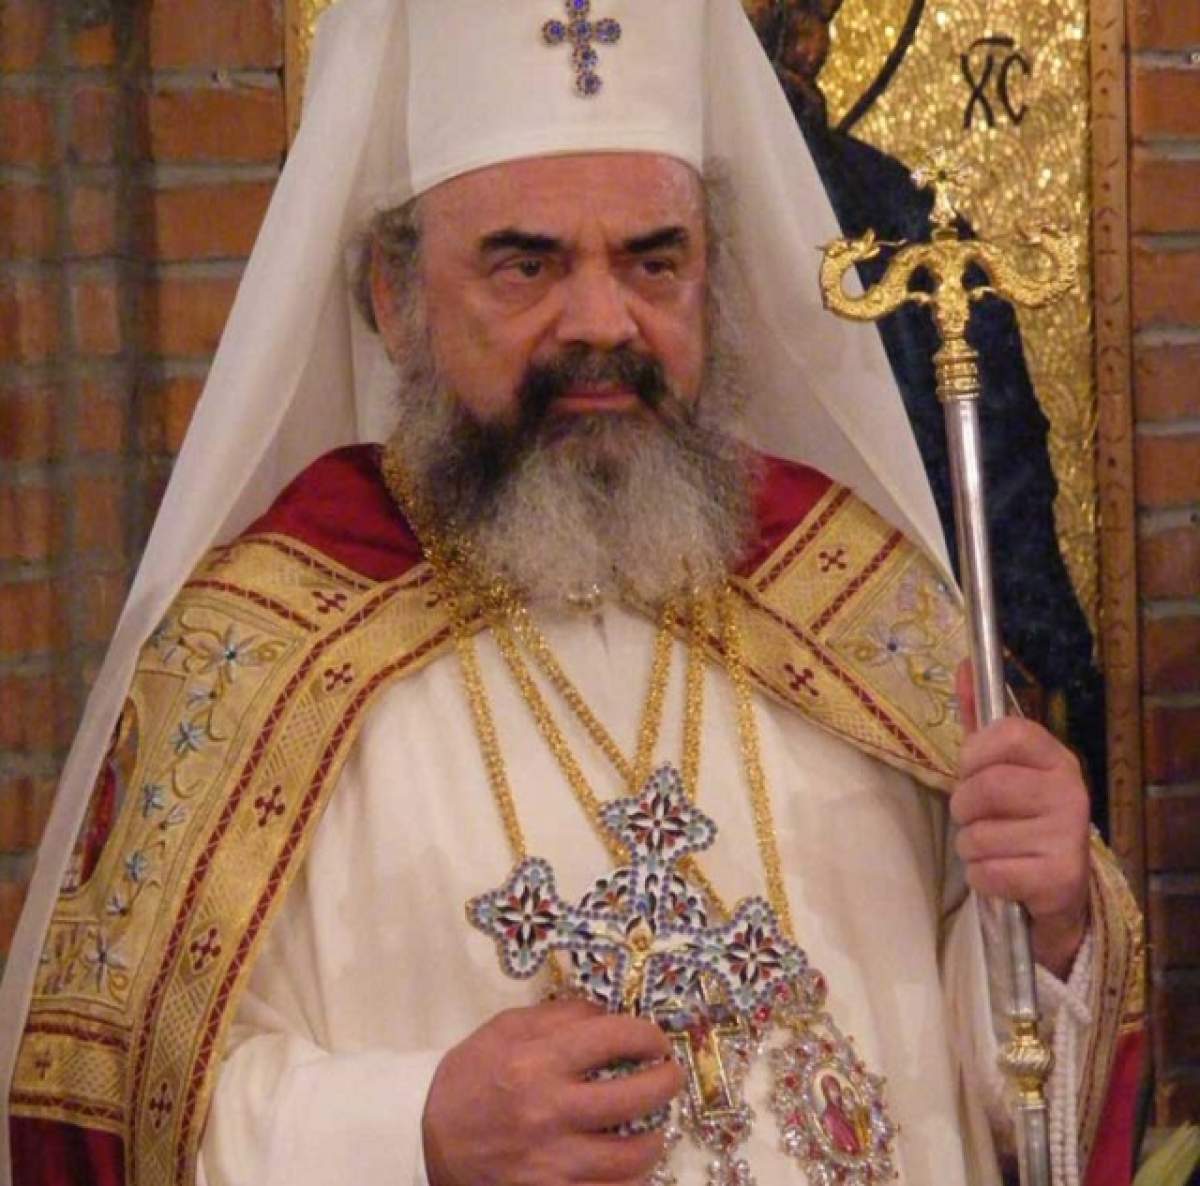 EXCLUSIV / Biserica Ortodoxă Română vinde ţigări! Document exploziv! Slujitorii Domnului fac bani din "iarba dracului"!